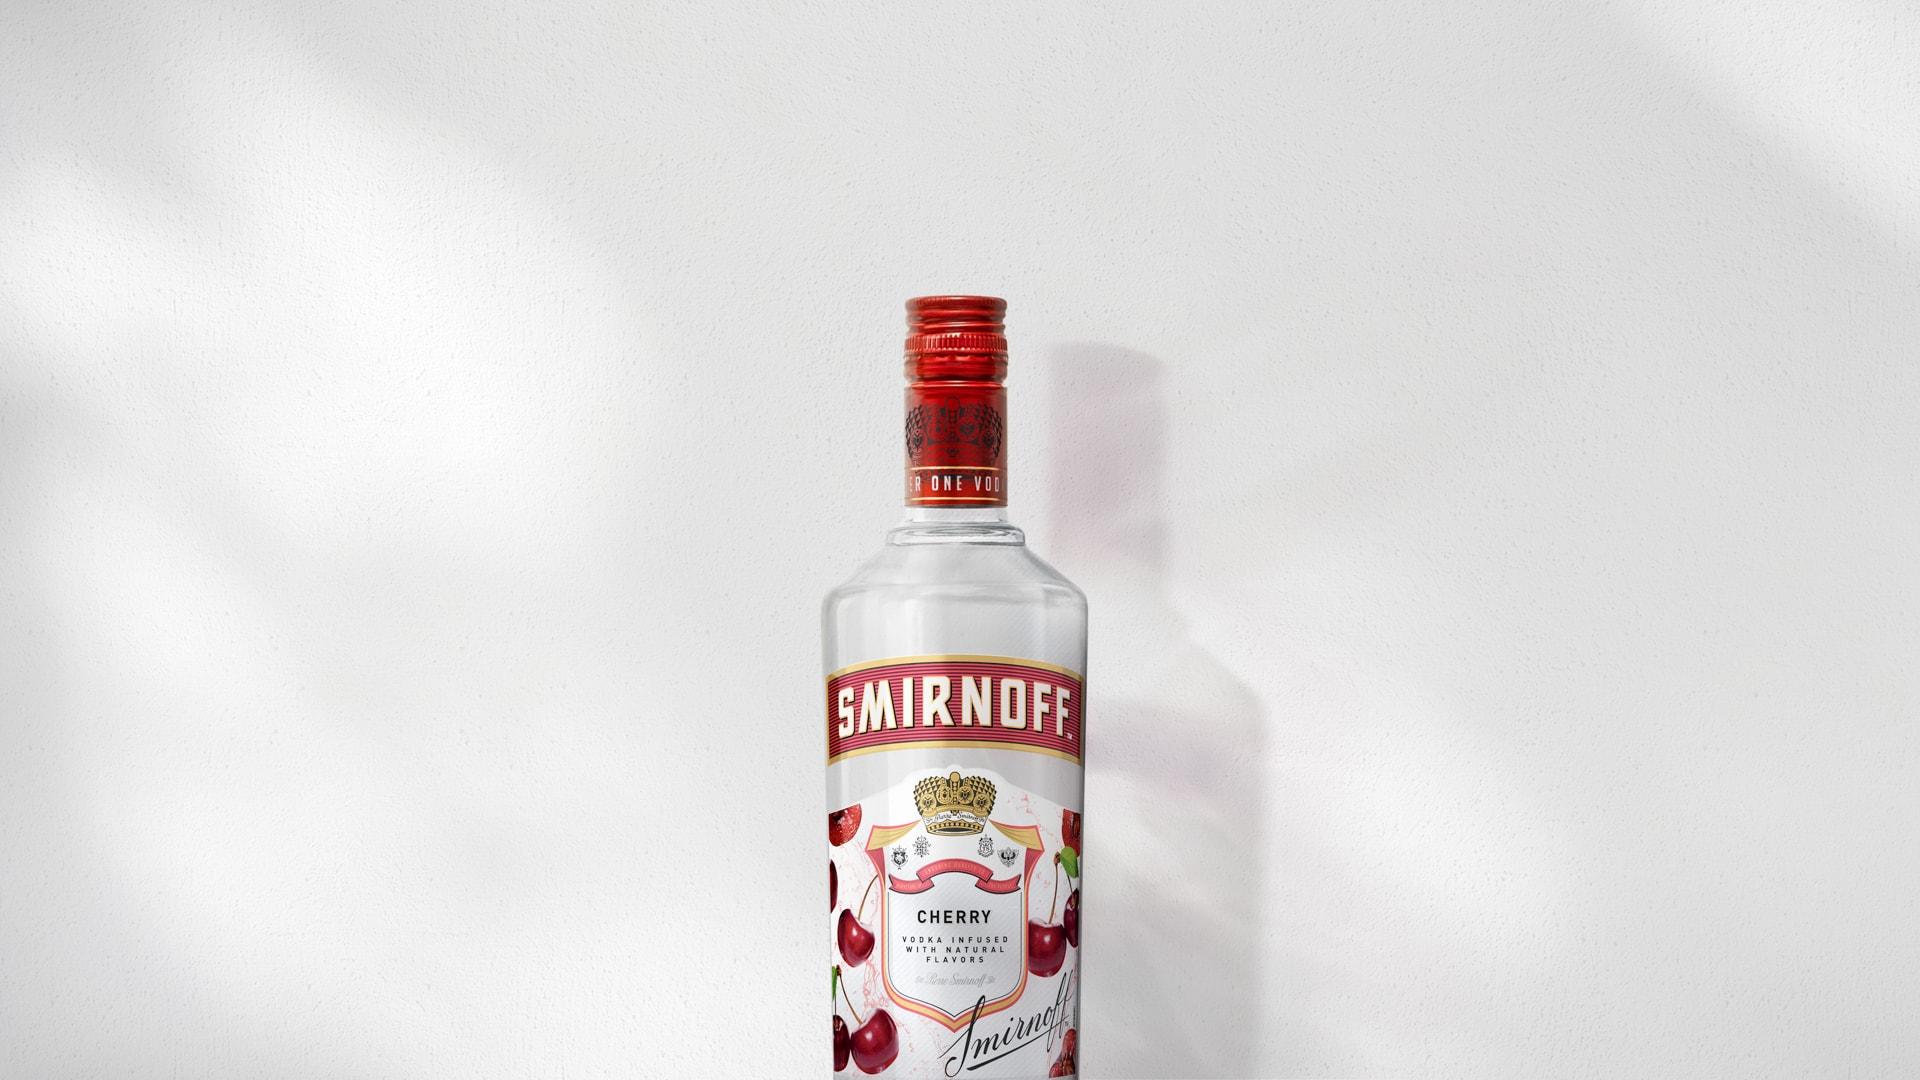 Smirnoff Cherry on grey background